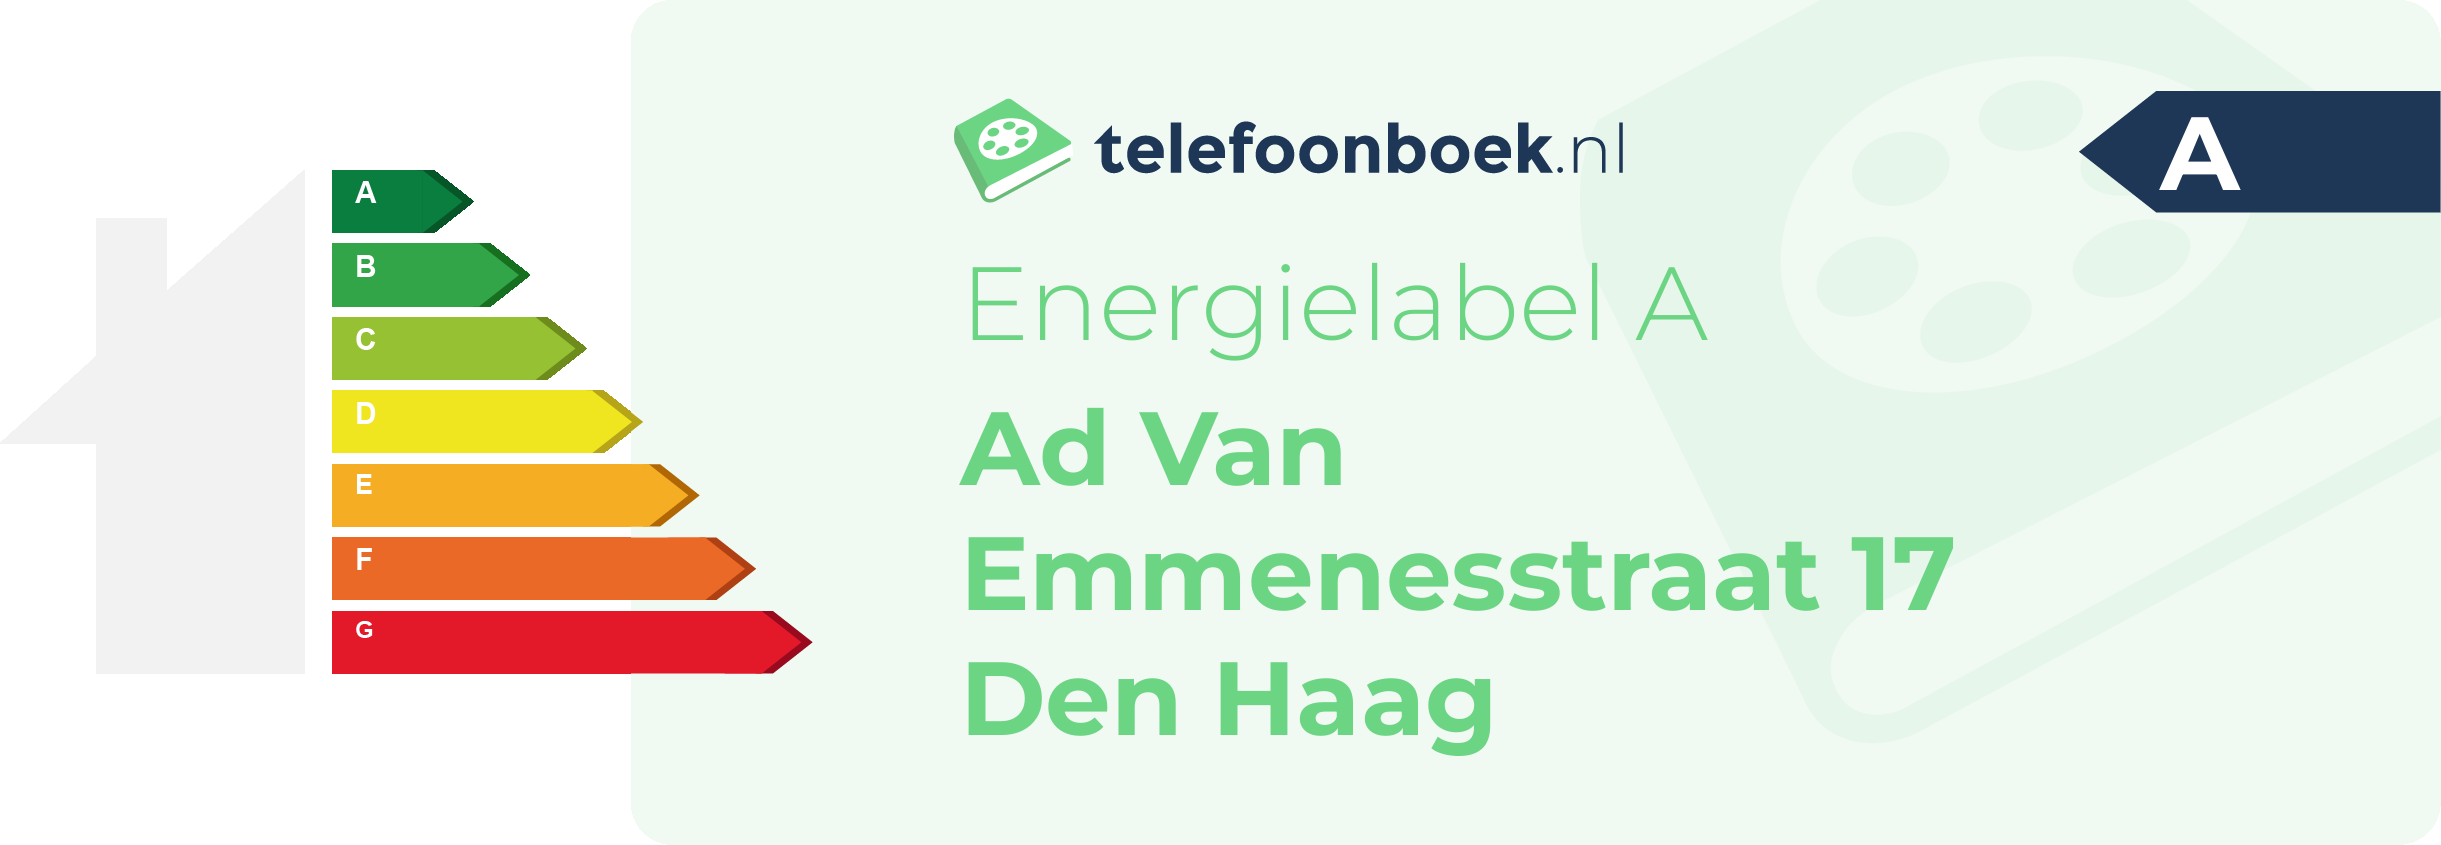 Energielabel Ad Van Emmenesstraat 17 Den Haag